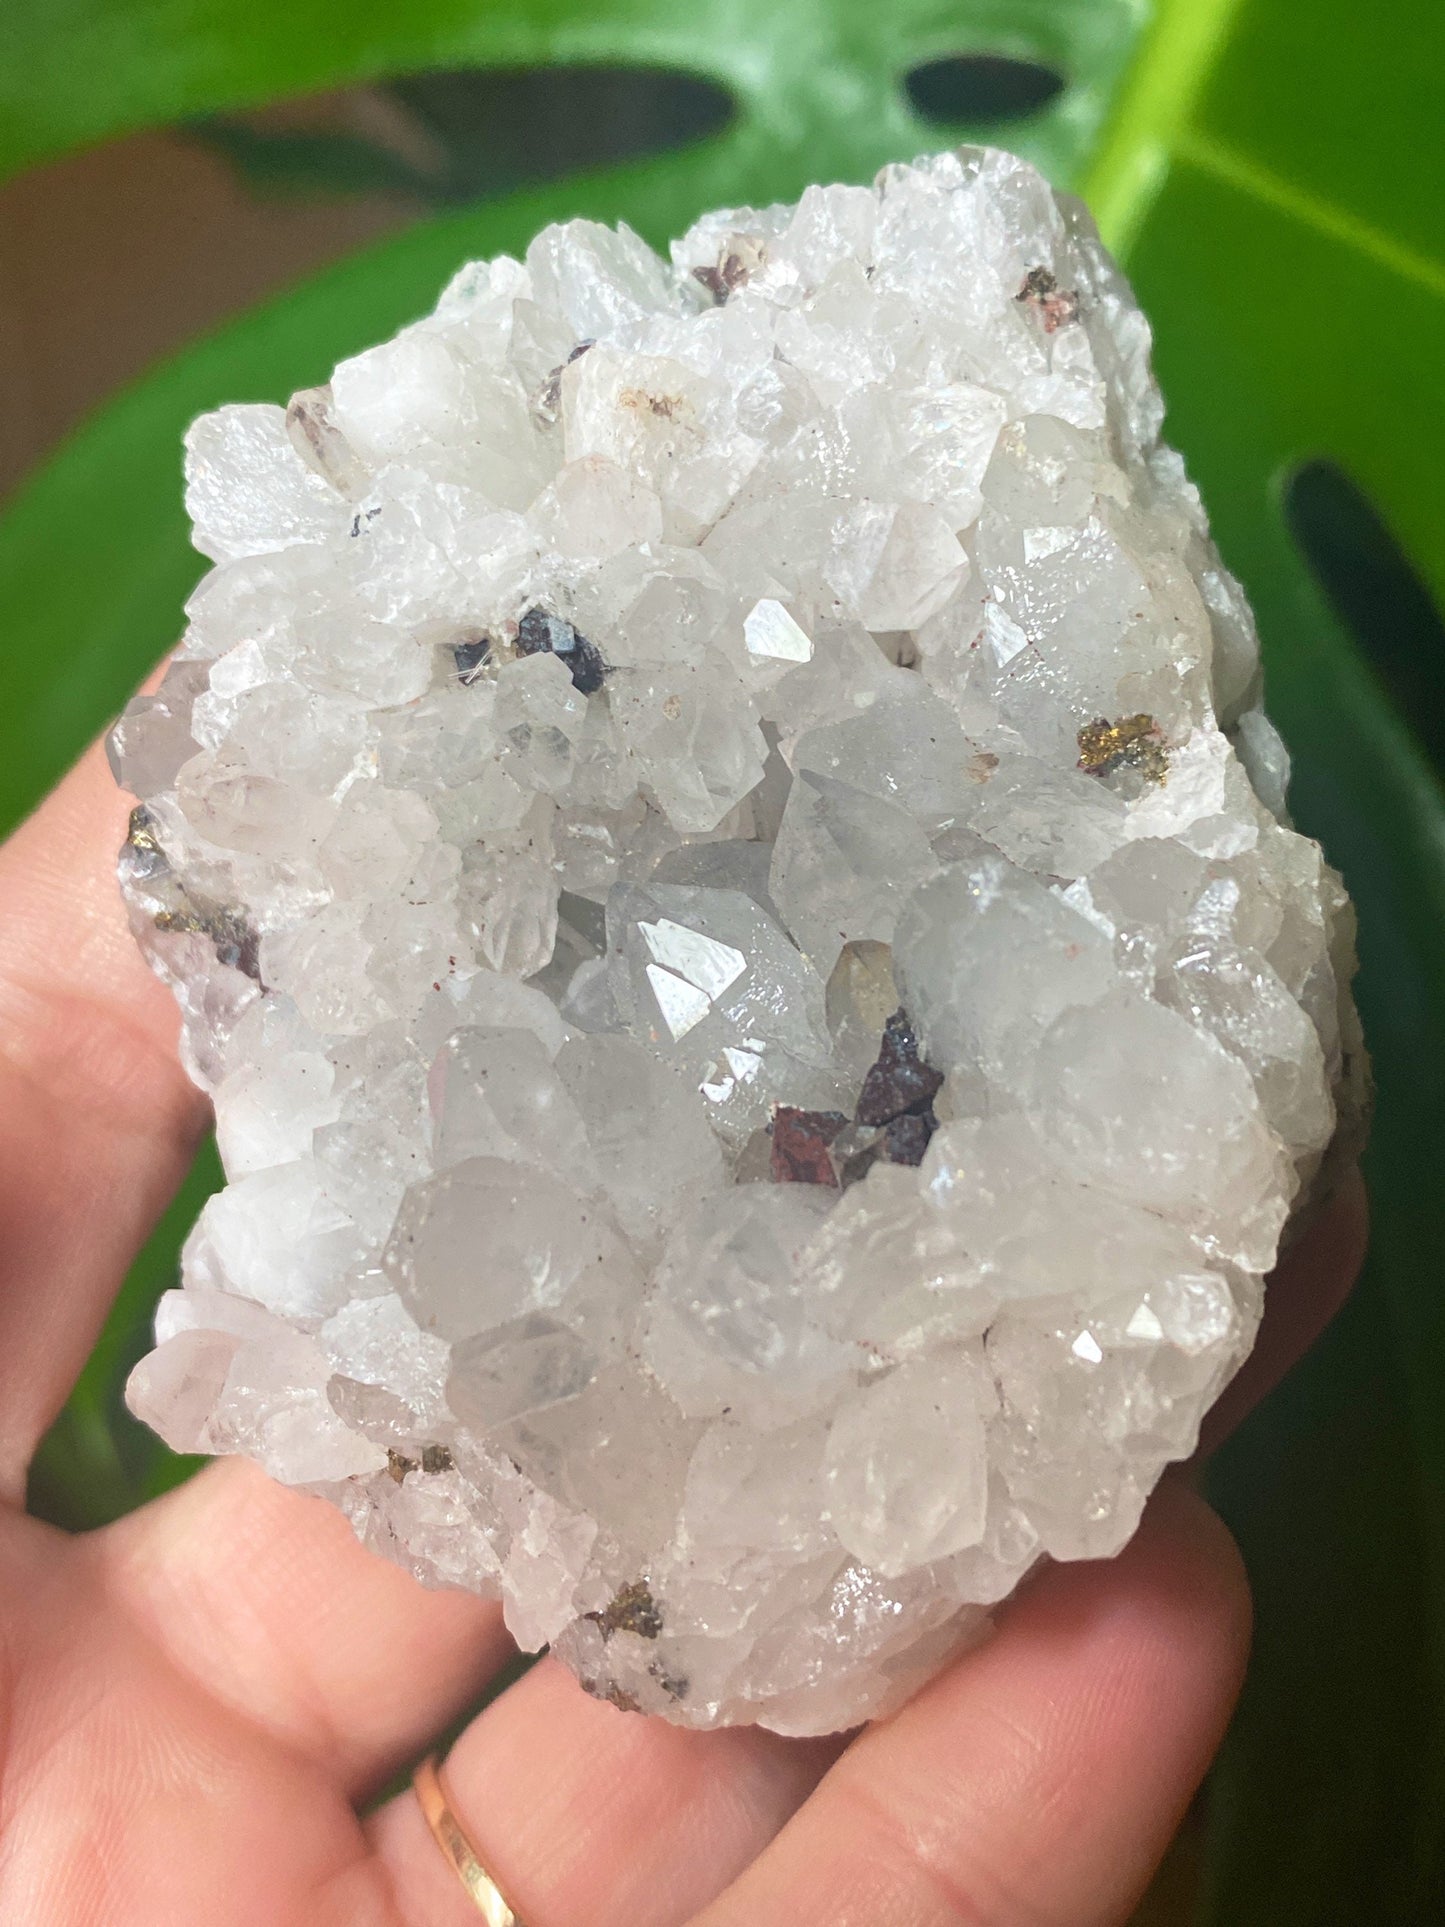 Hematite Quartz Cluster Pyrite Galena Crystal Cluster Specimen 7x7cm, 122g Raw Minerals